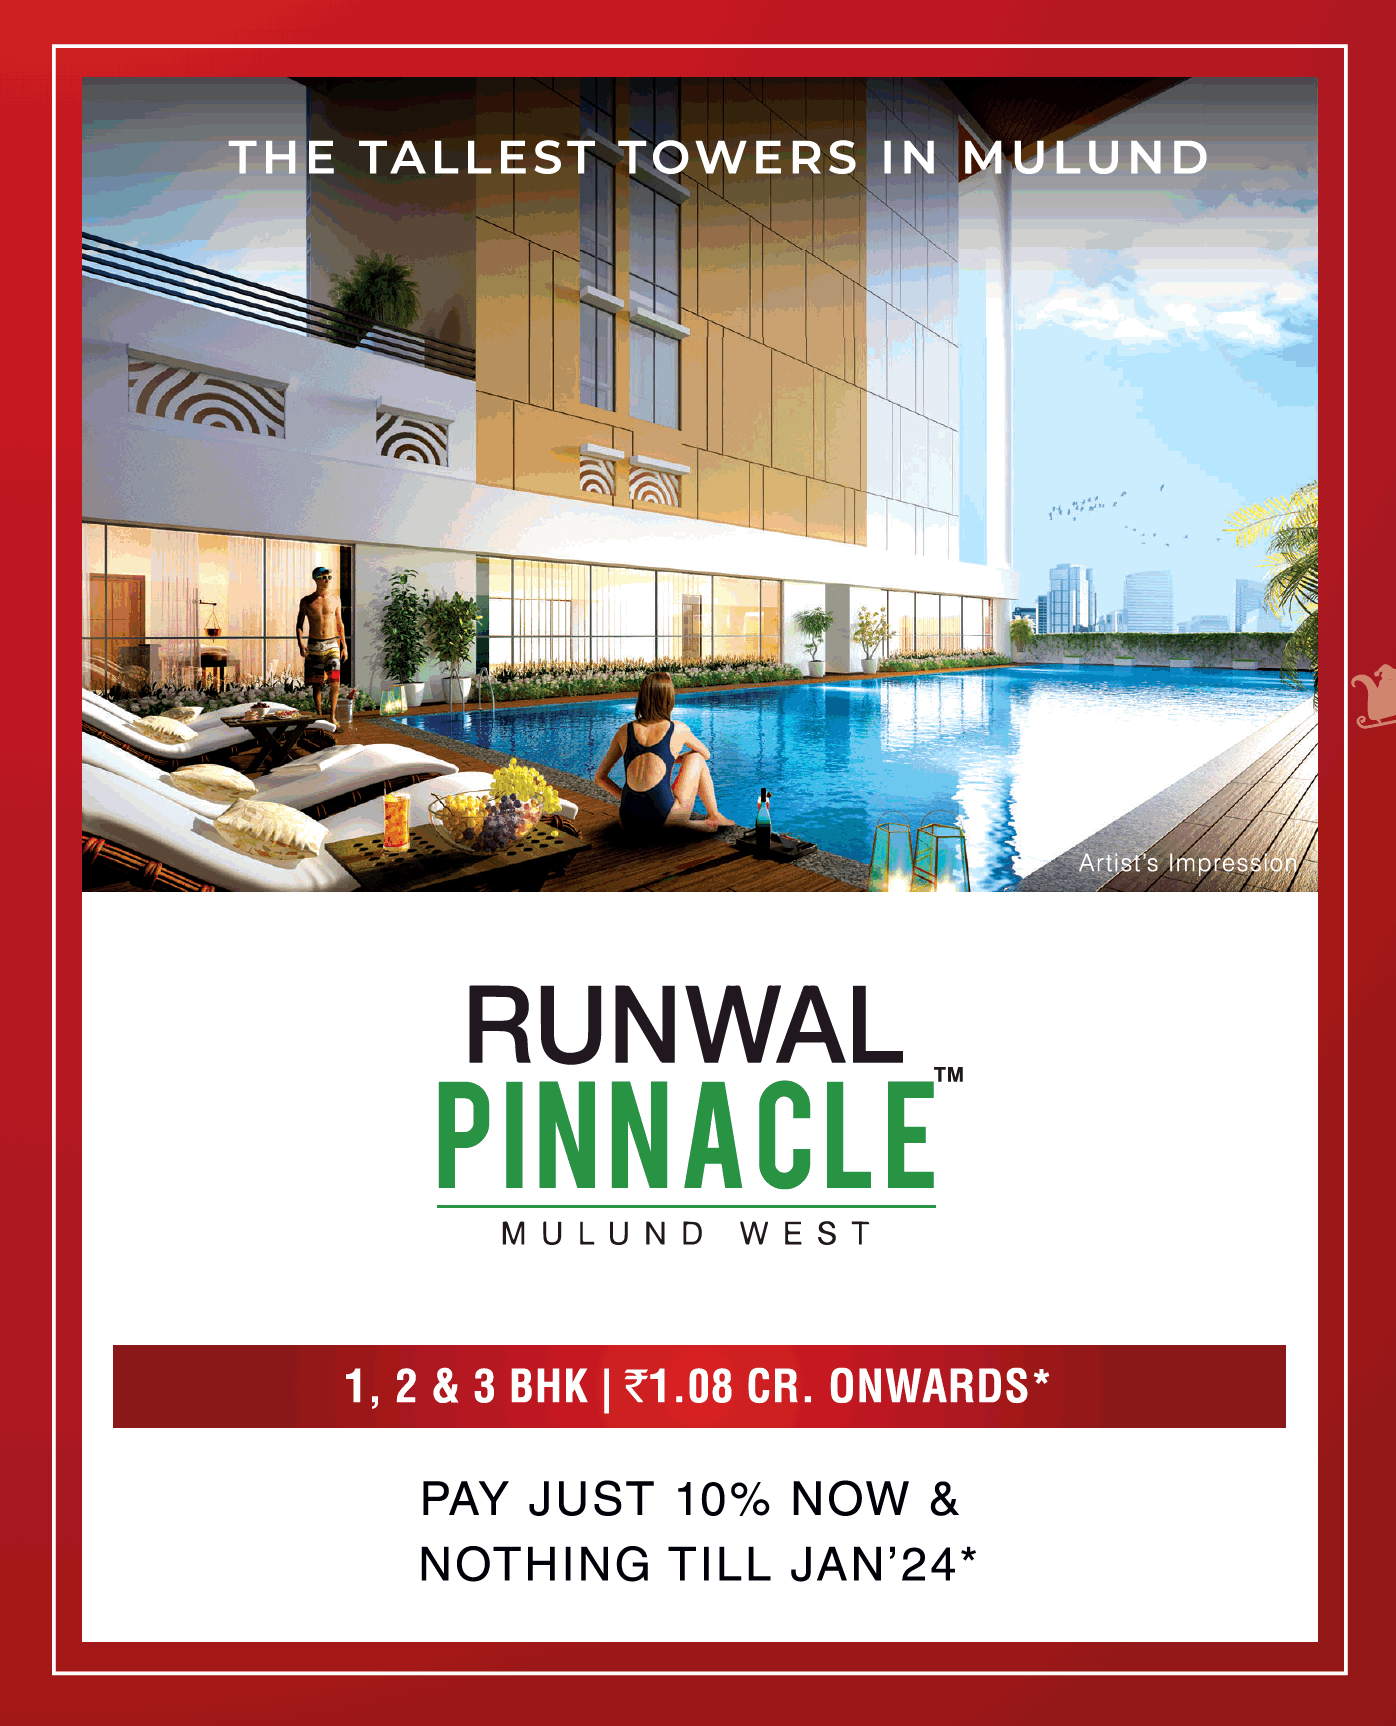 Pay just 10% now & nothing till Jan 24 at Runwal Pinnacle, Mumbai Update